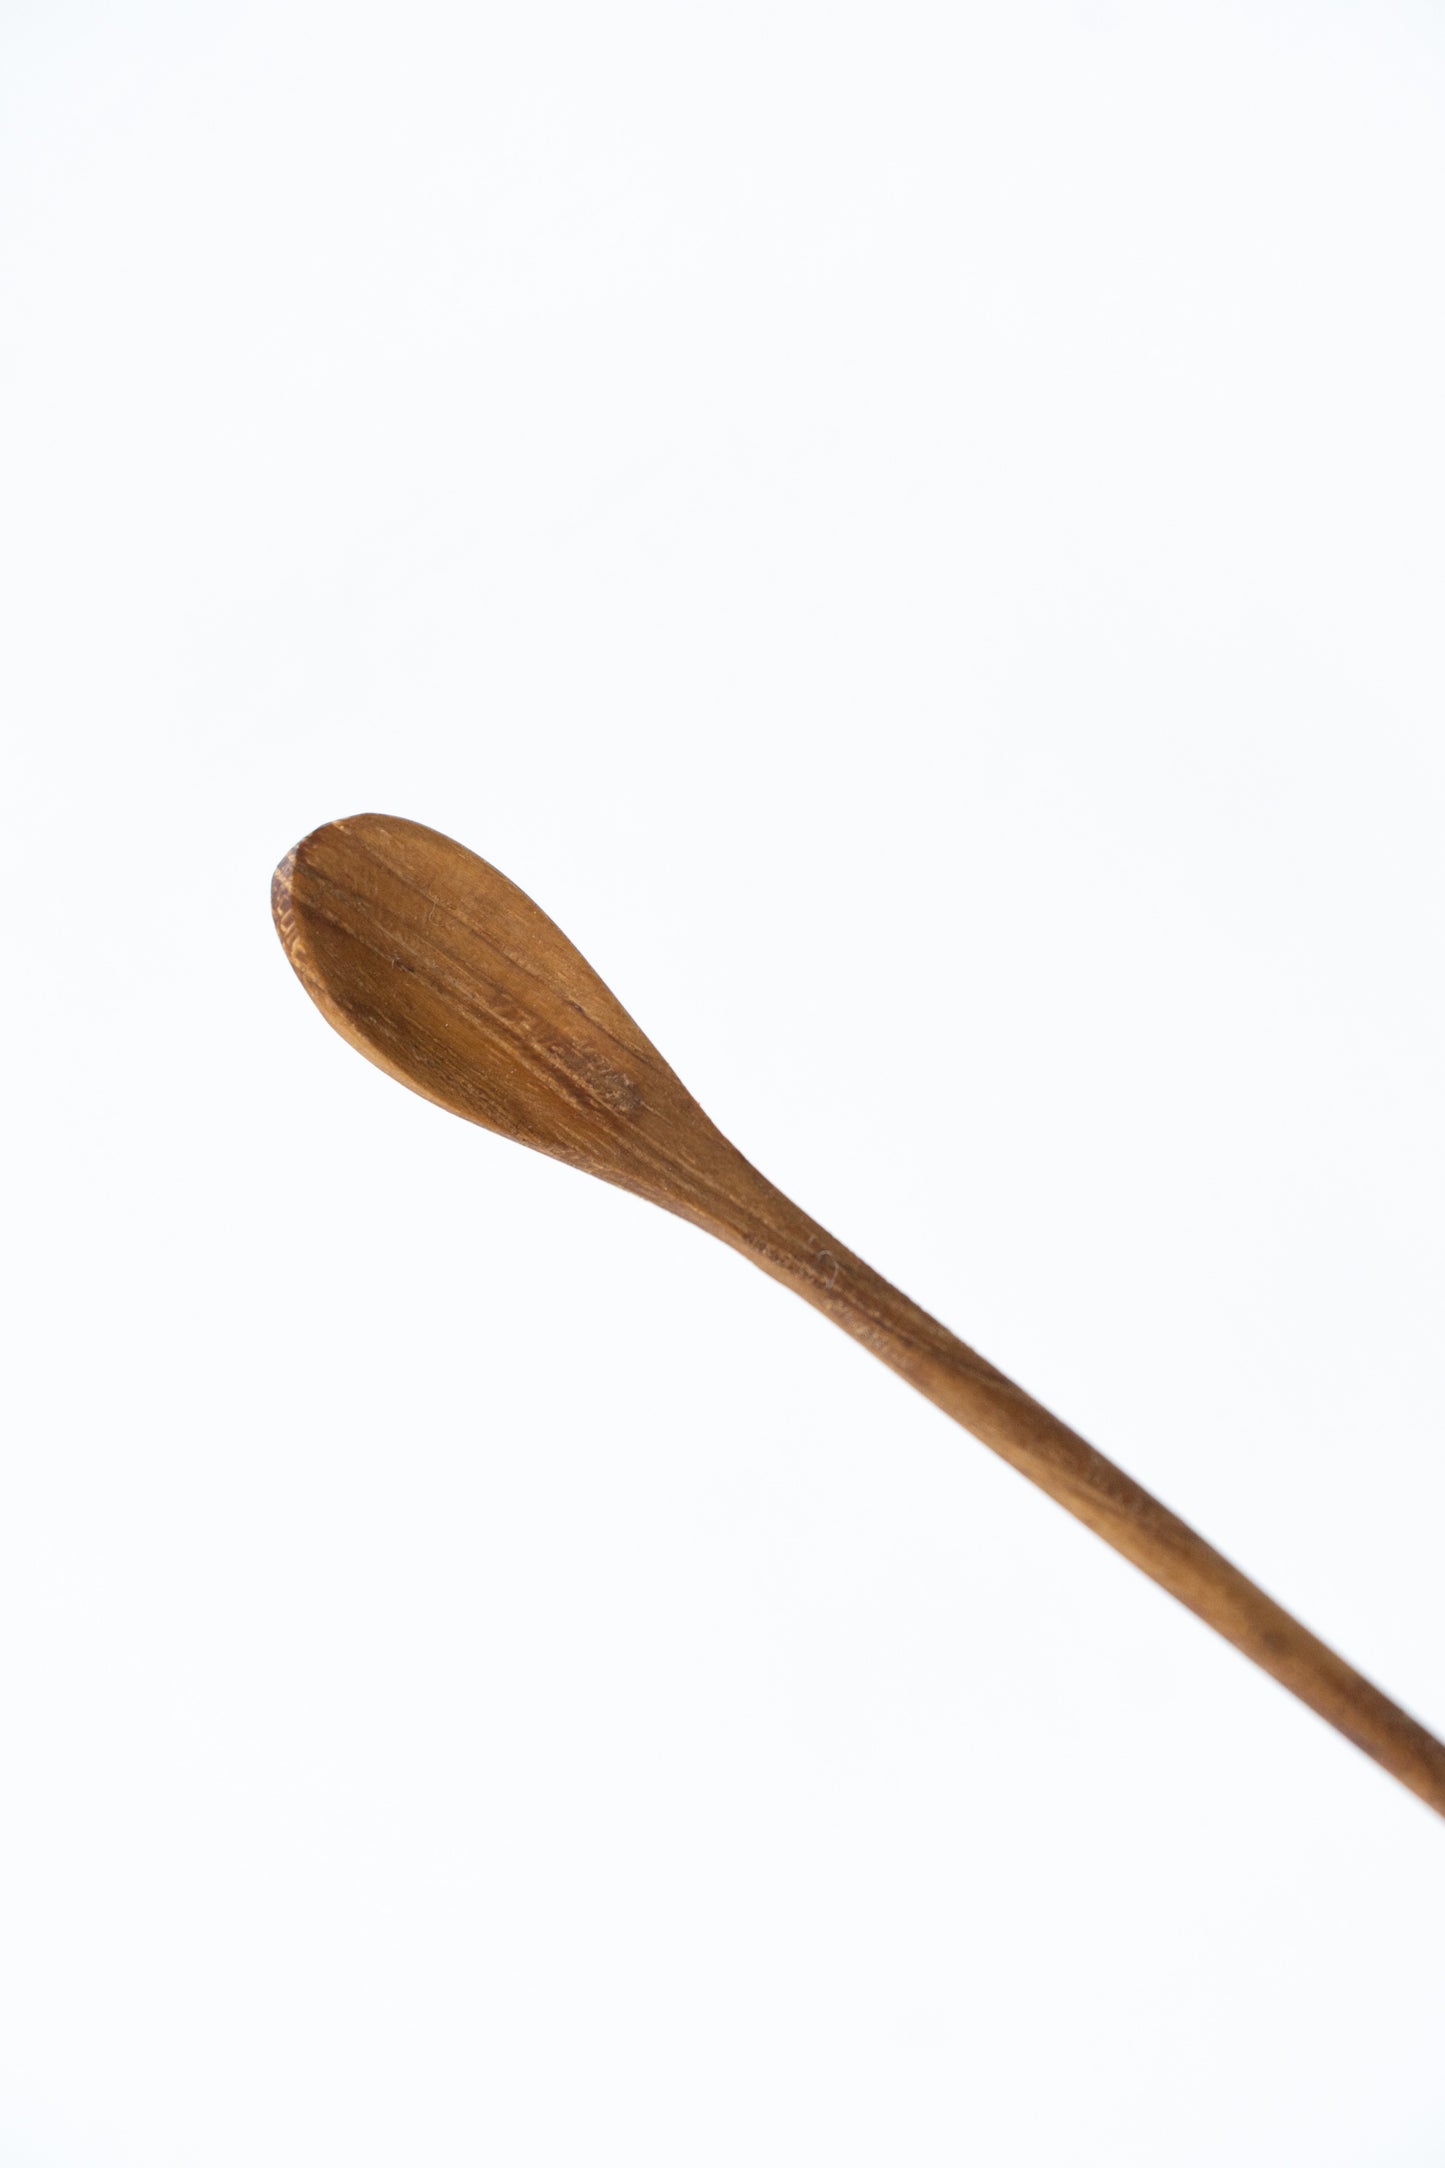 Teak Stirrer Spoon – Long – Upstate MN